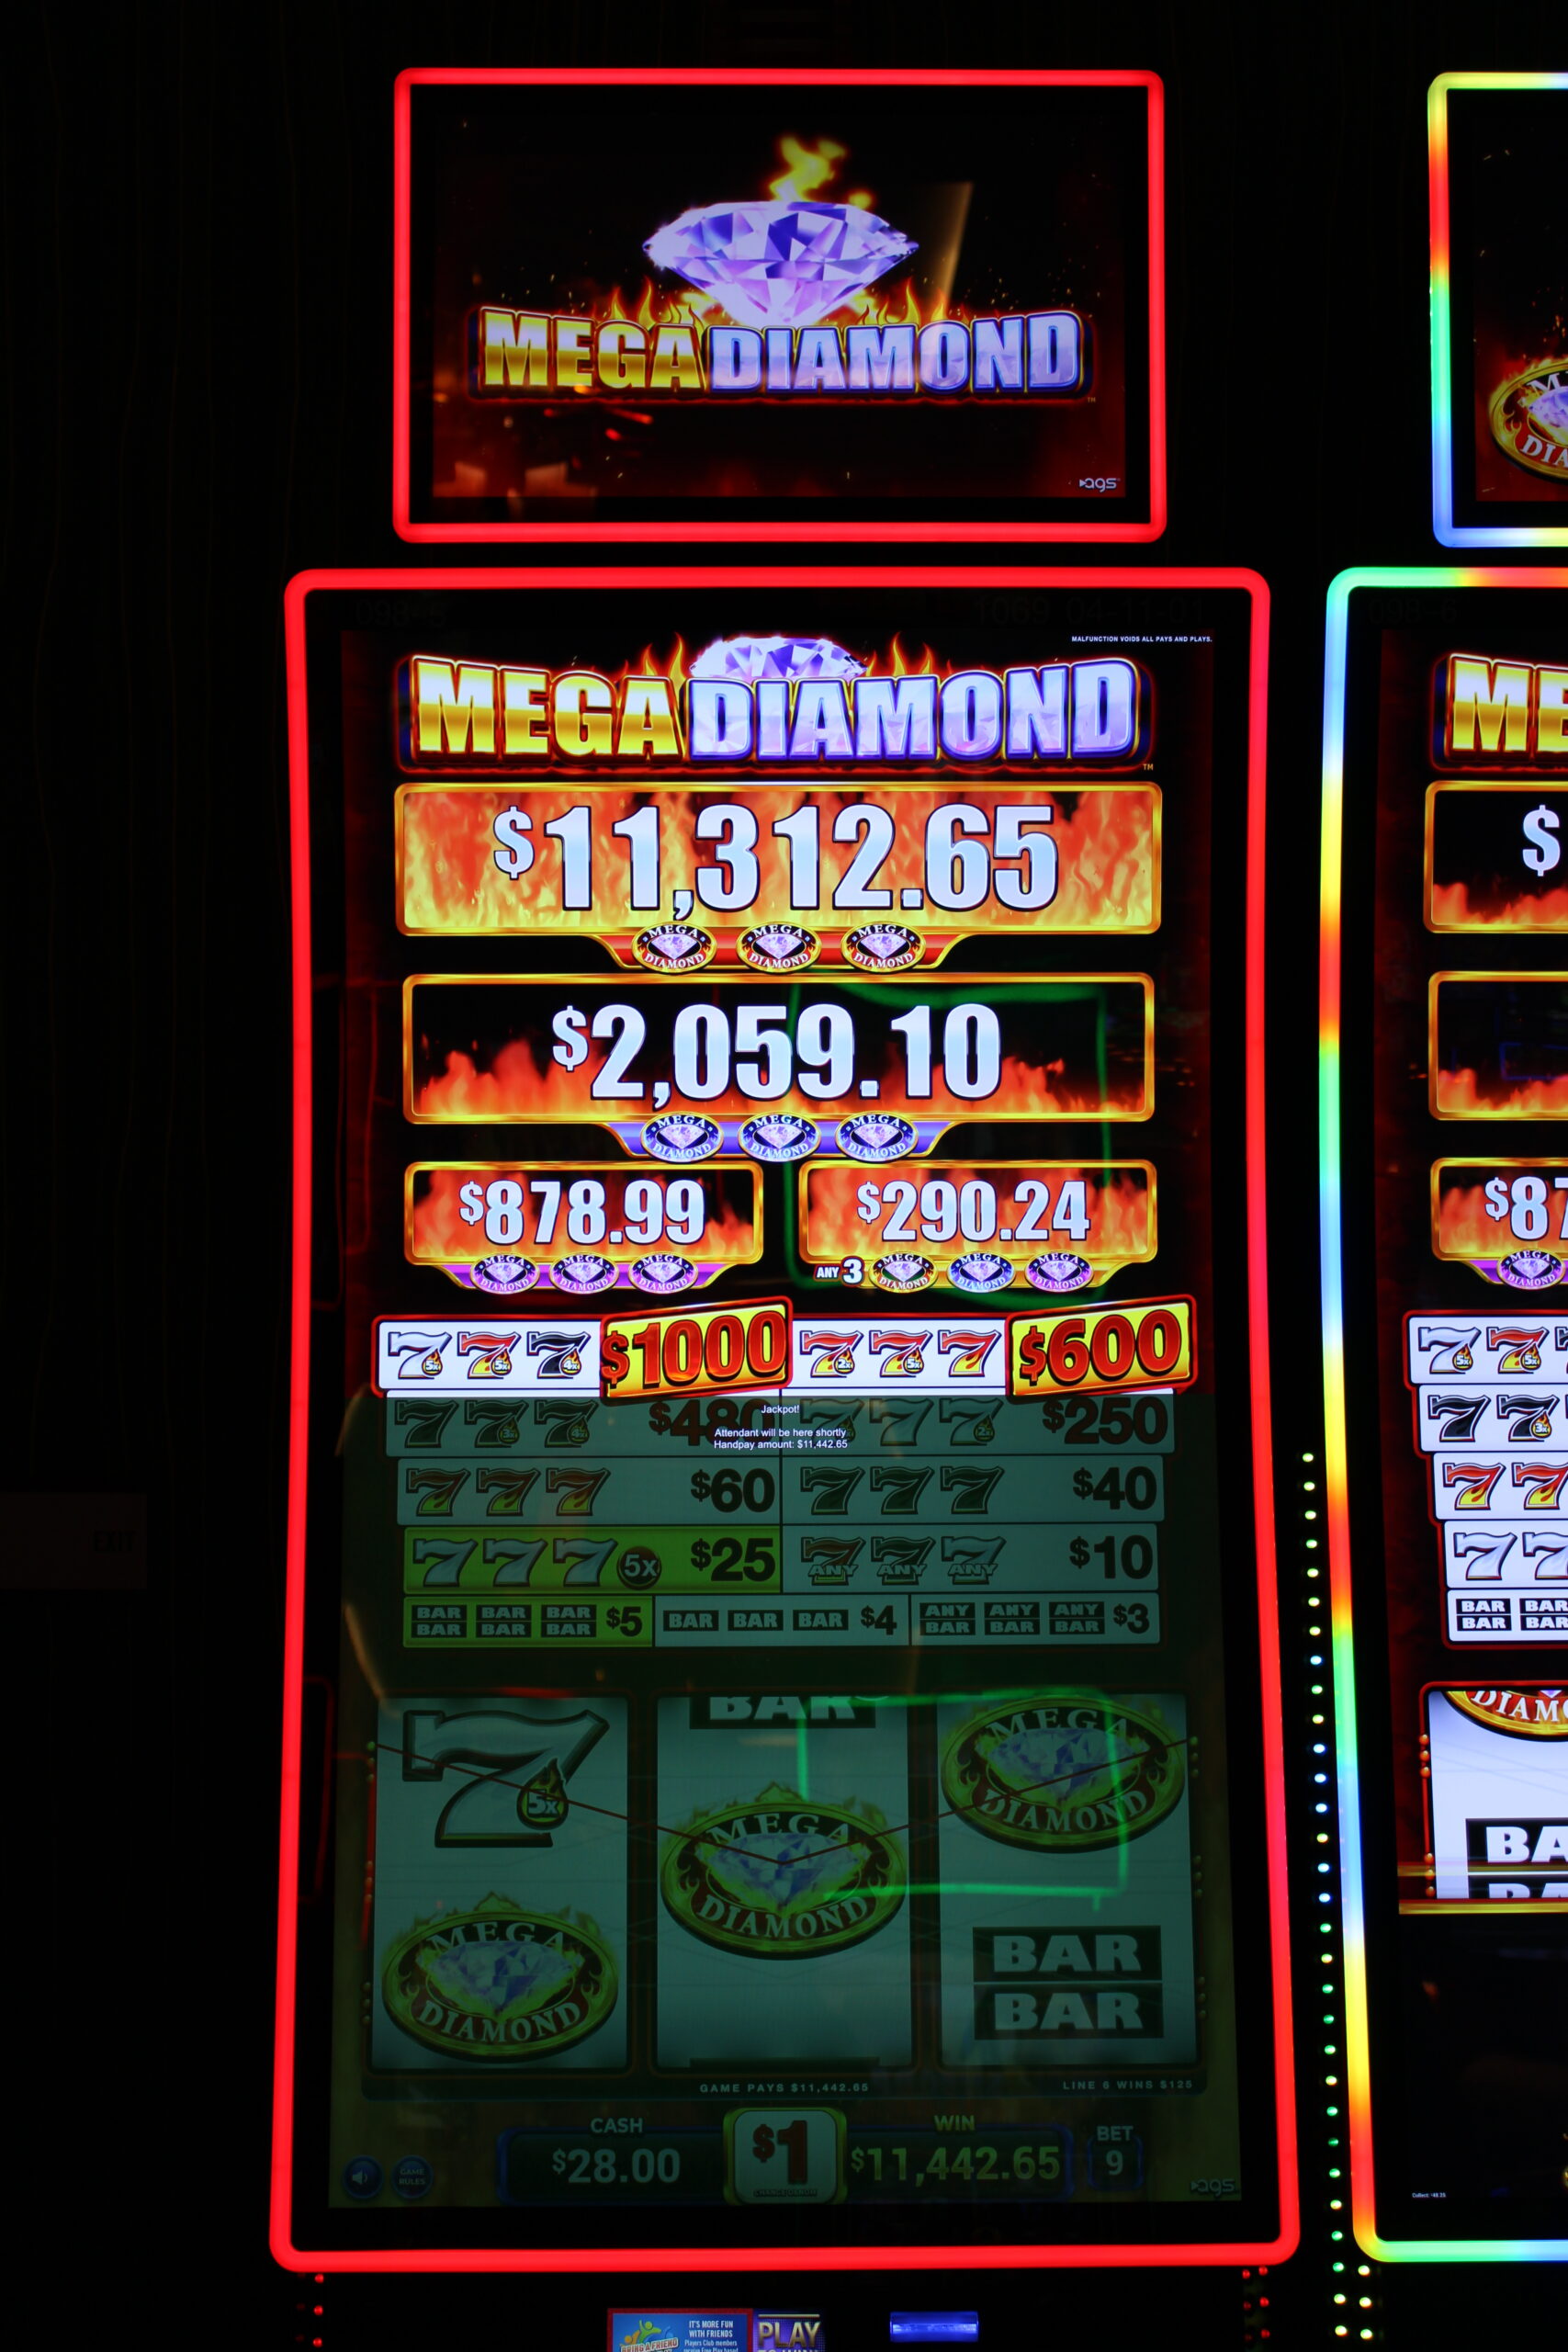 Mega_Diamond_$11,442.65